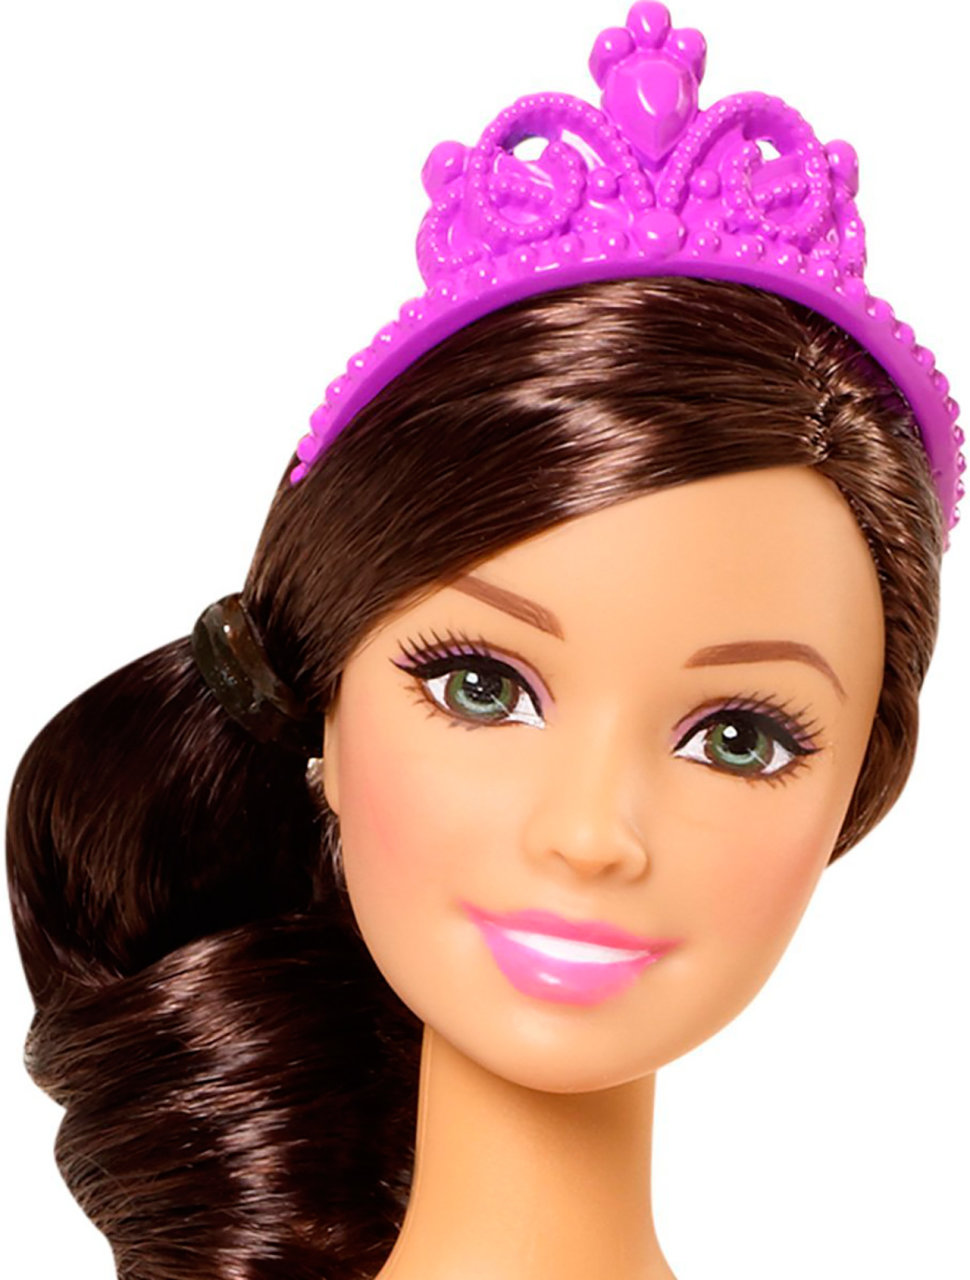 Кукла Barbie® Балерина, 2 вида  